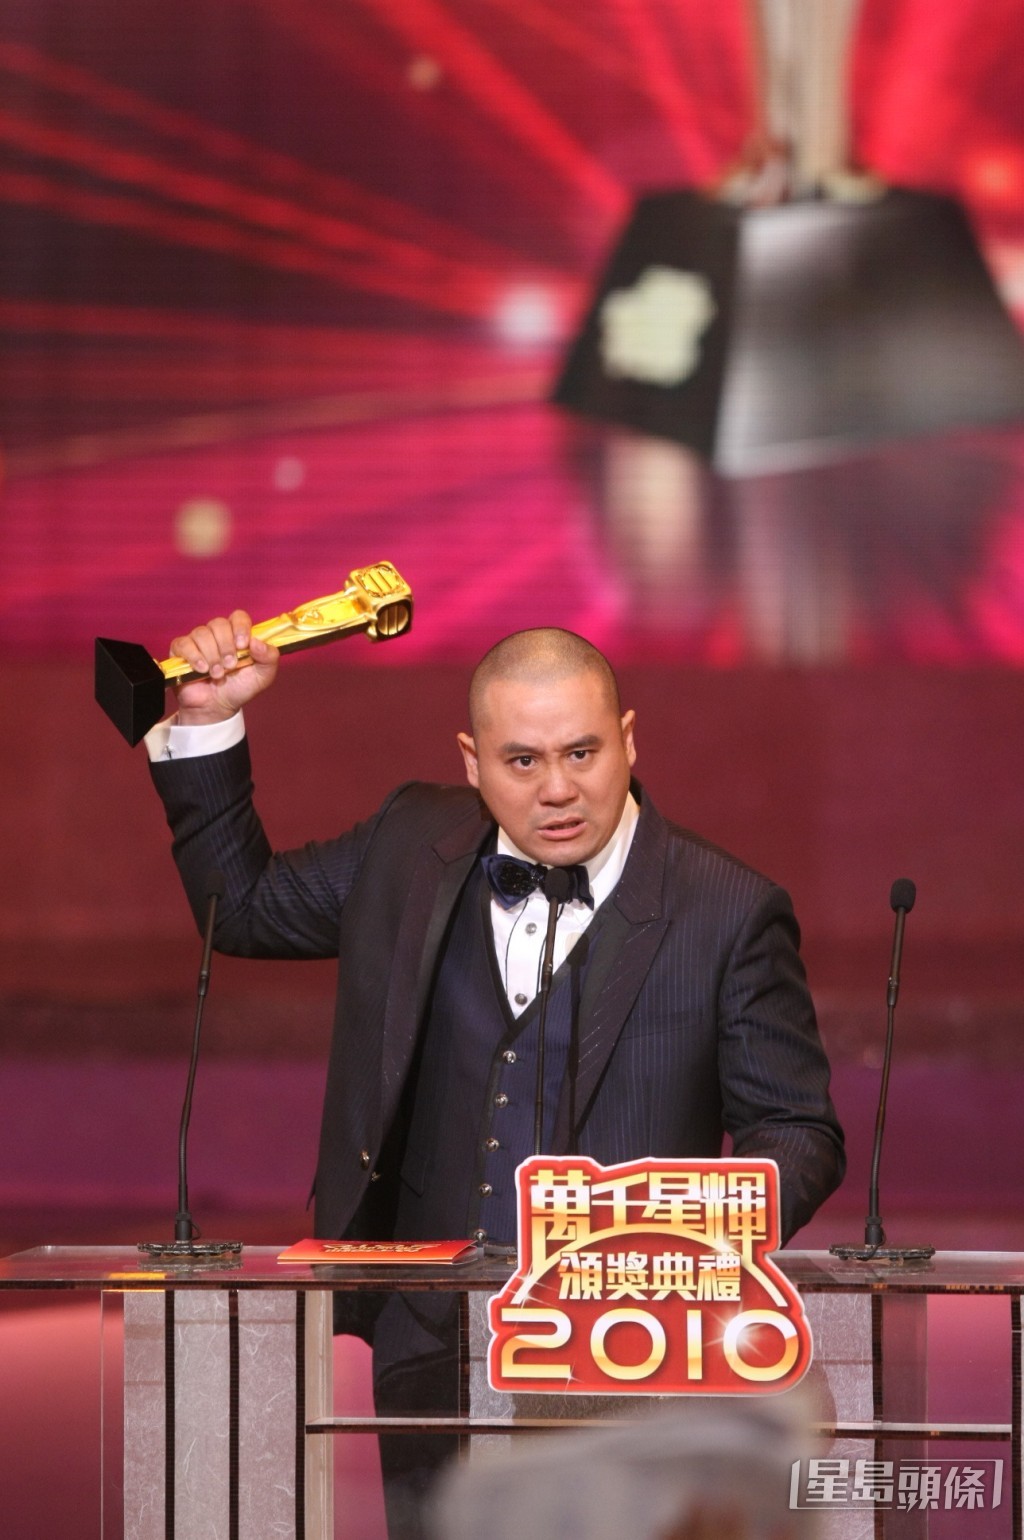 麥長青(麥包)憑劇集《巾幗梟雄之義海豪情》於《萬千星輝頒獎典禮2010》奪得最佳男配角。